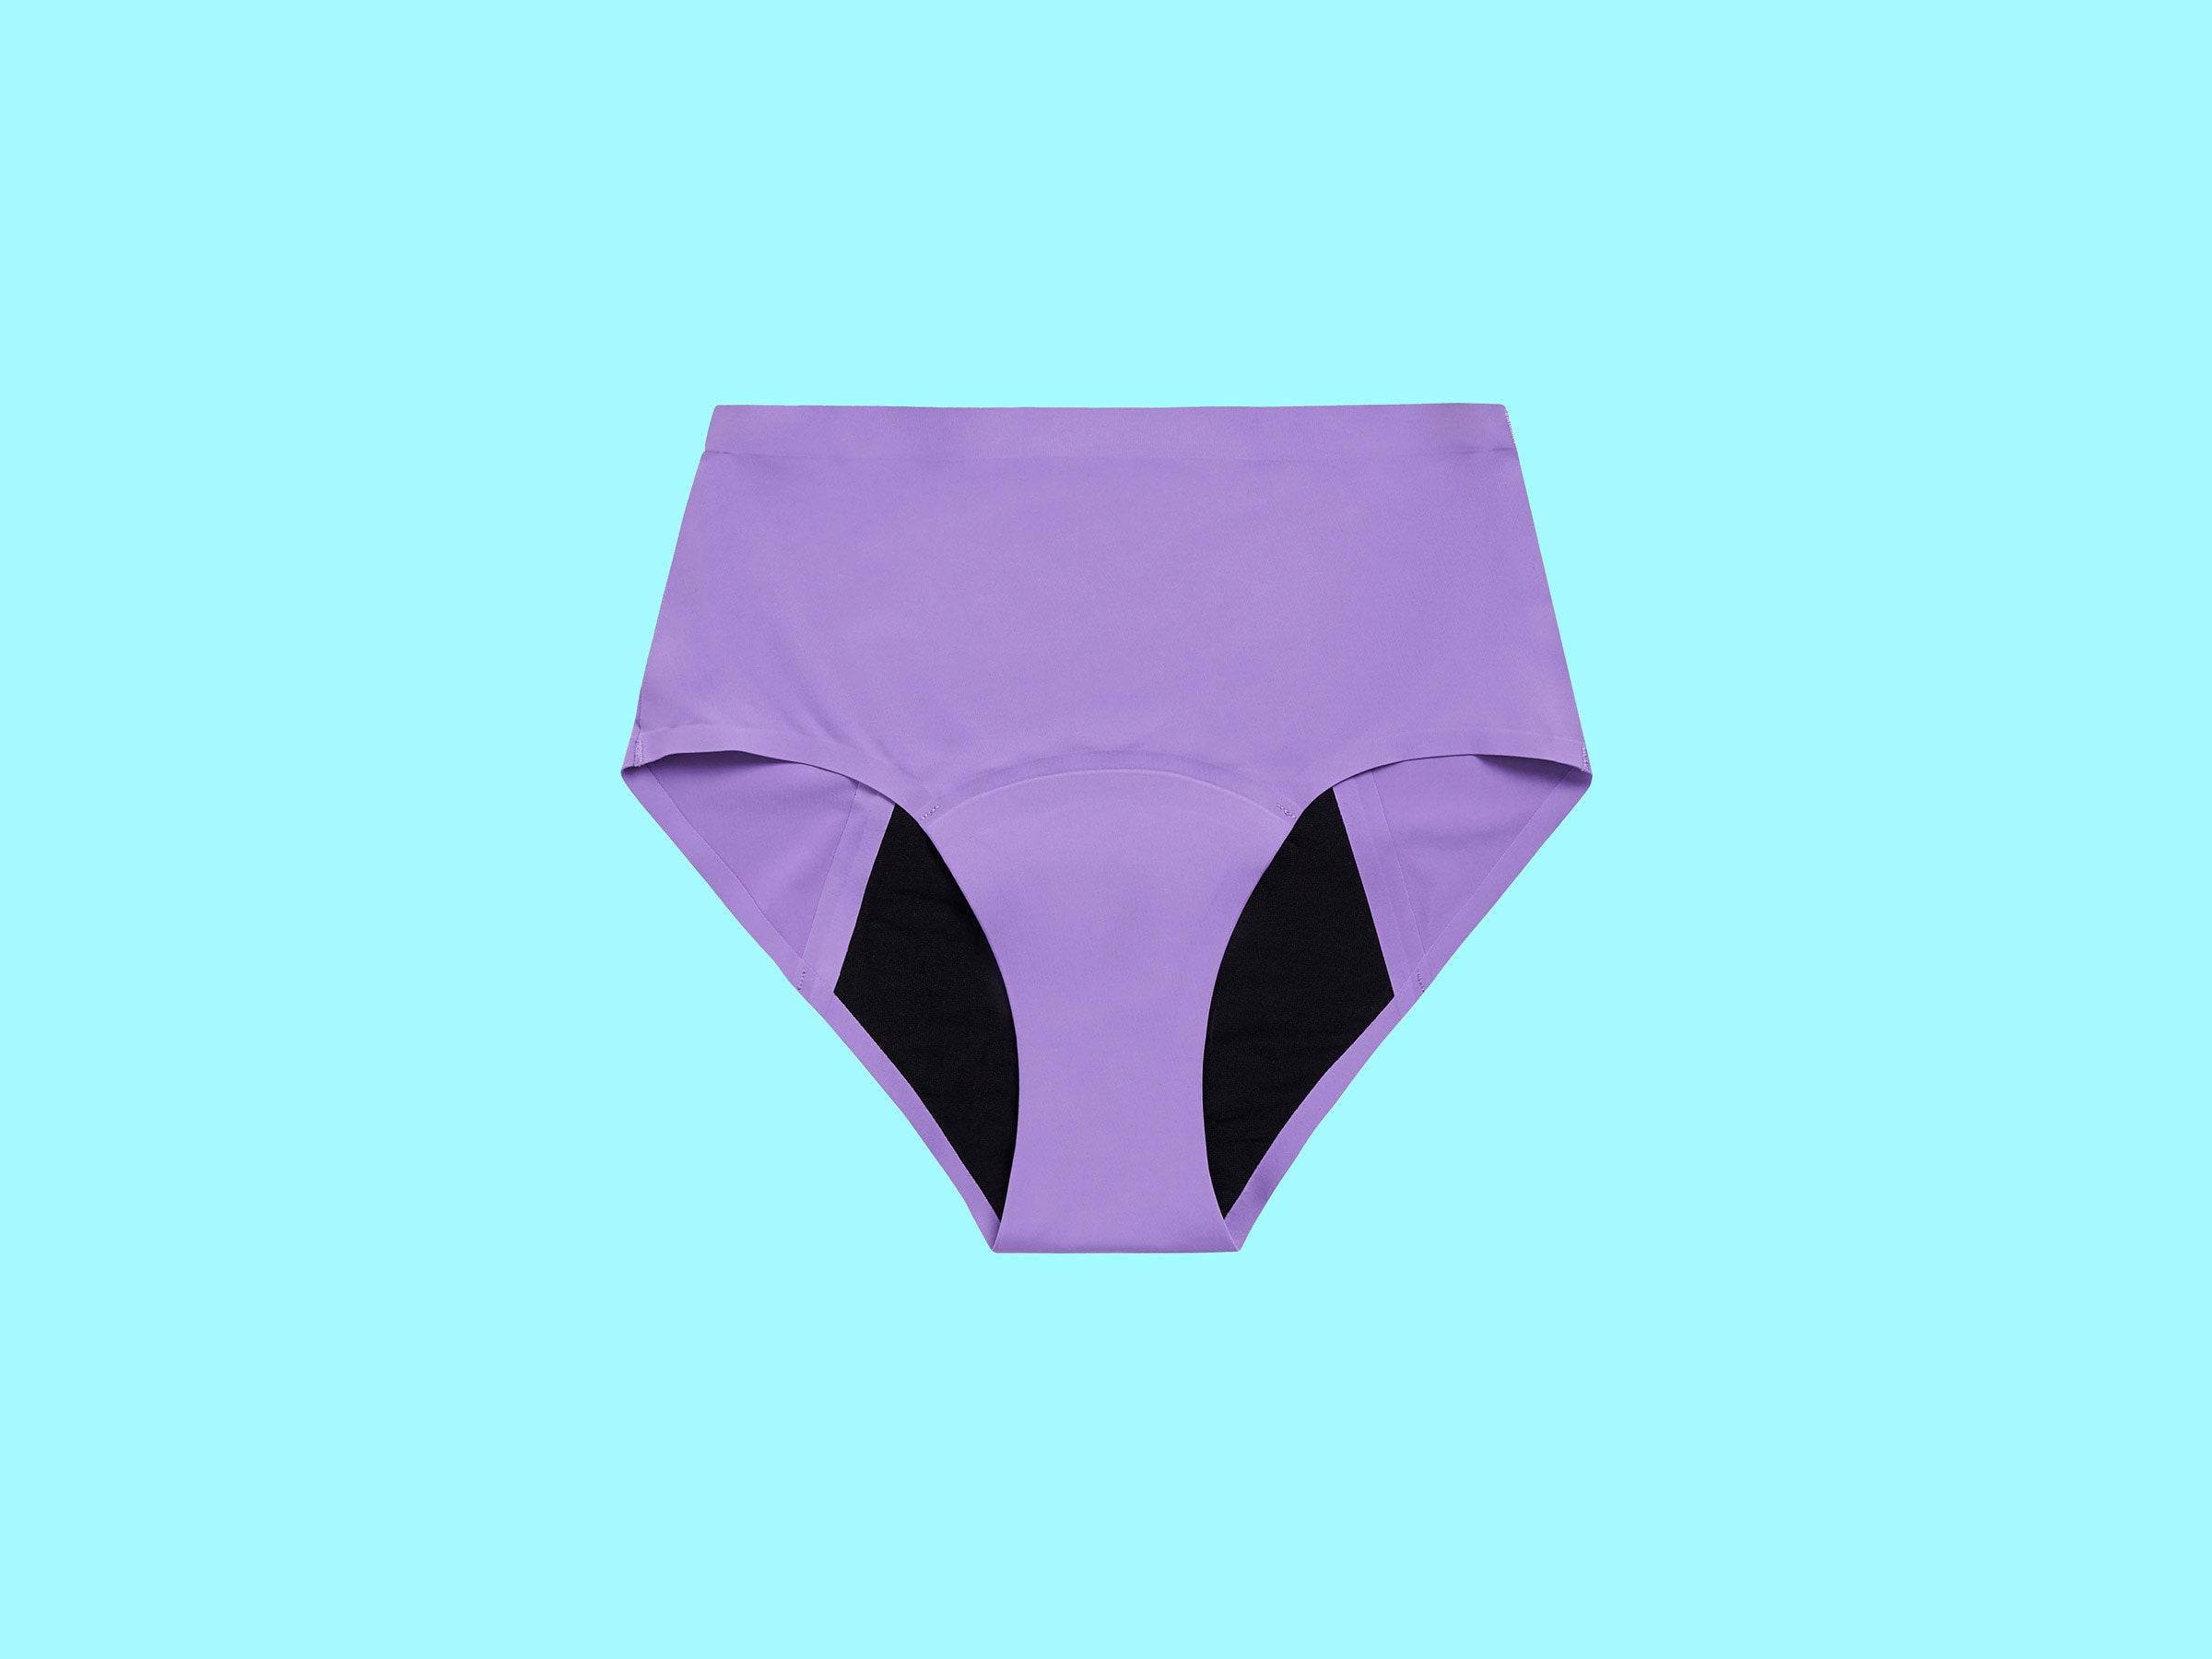 Ladies underwear